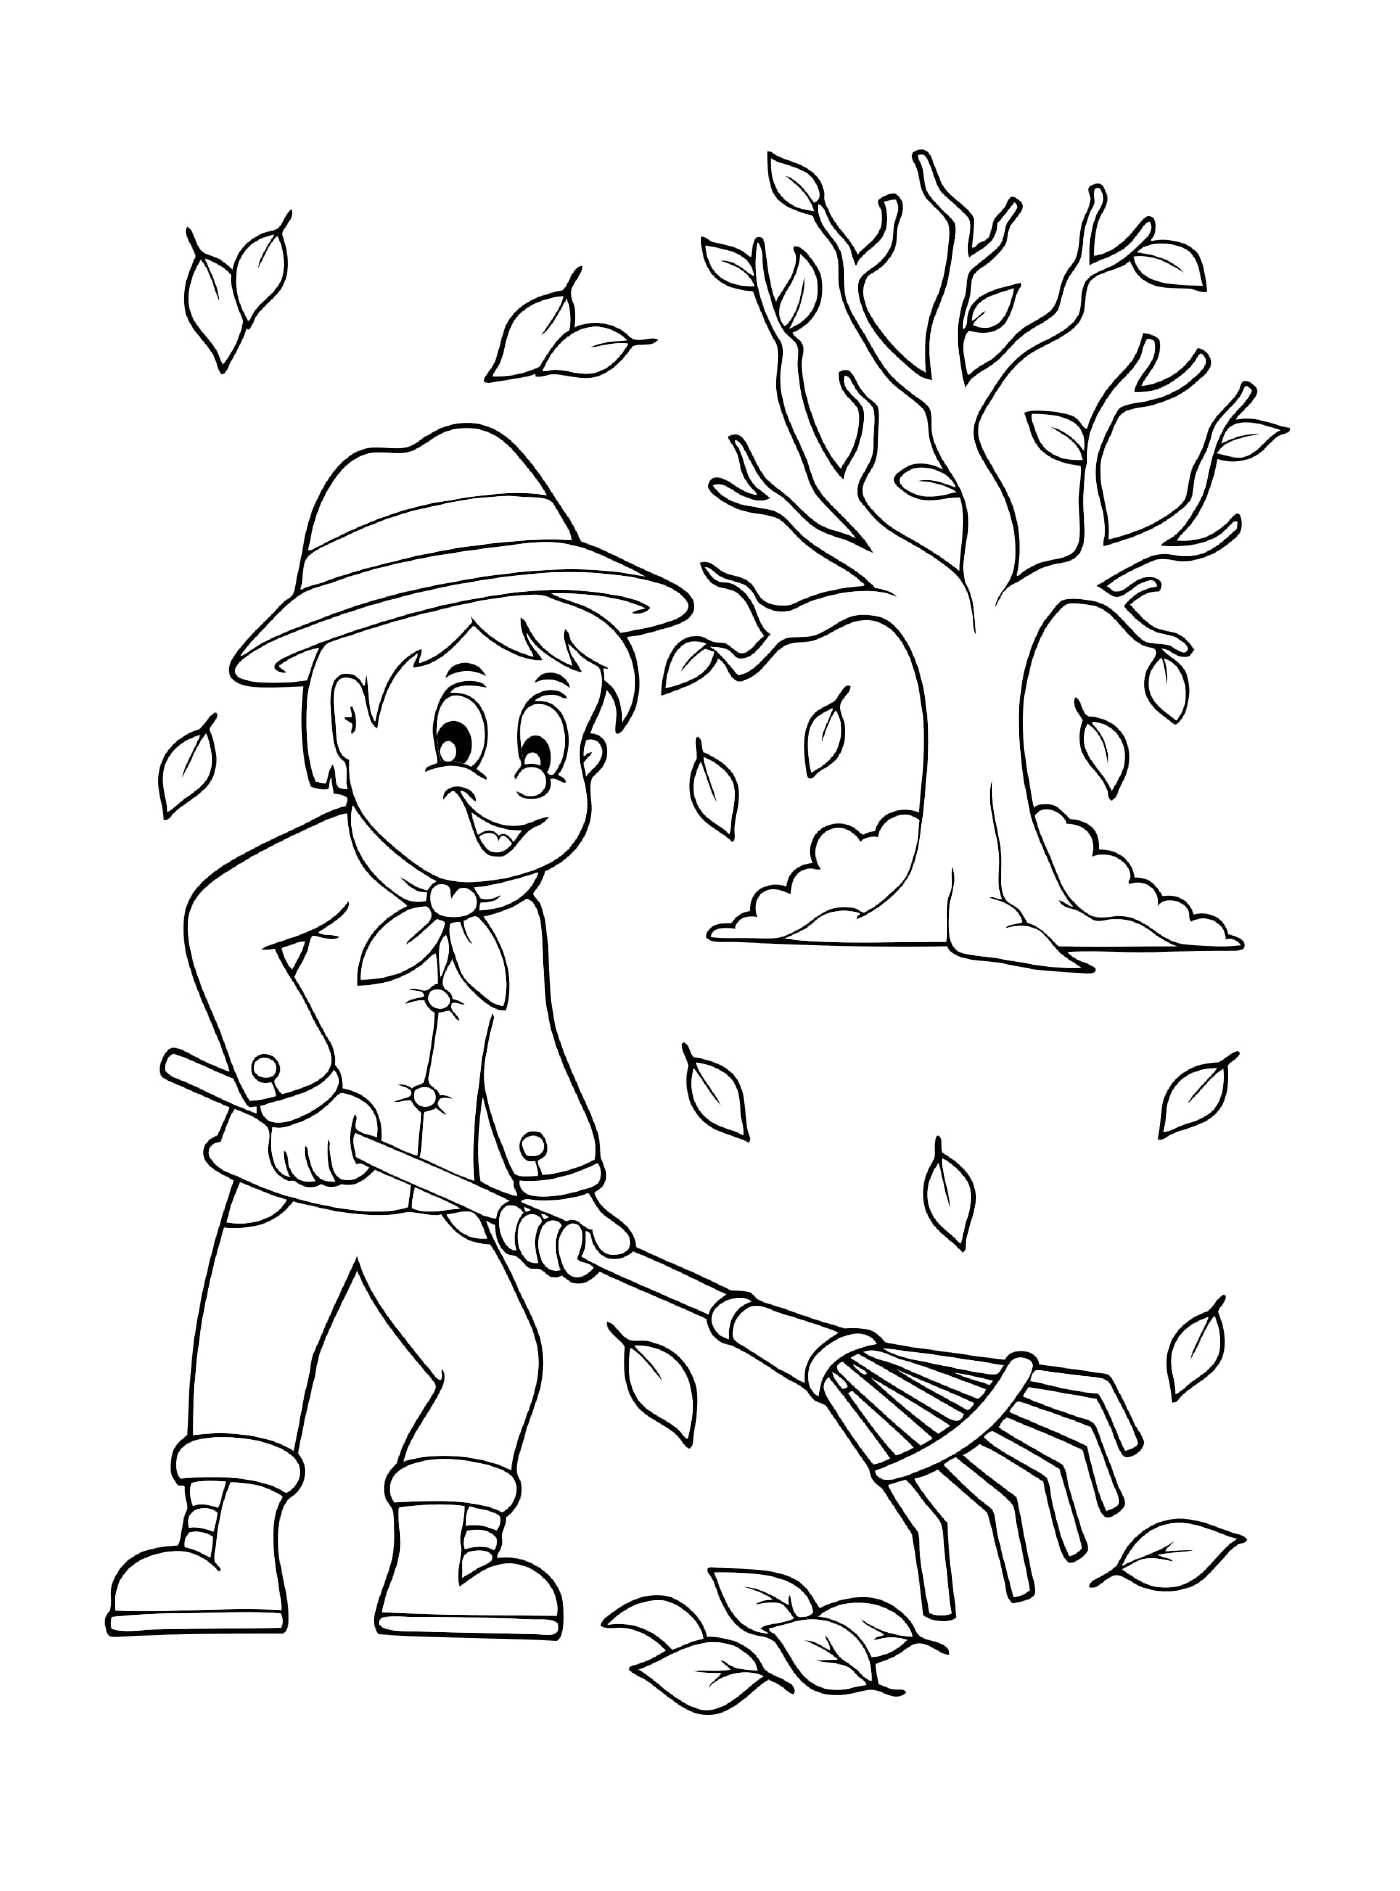   Un enfant ratisse les feuilles en automne 